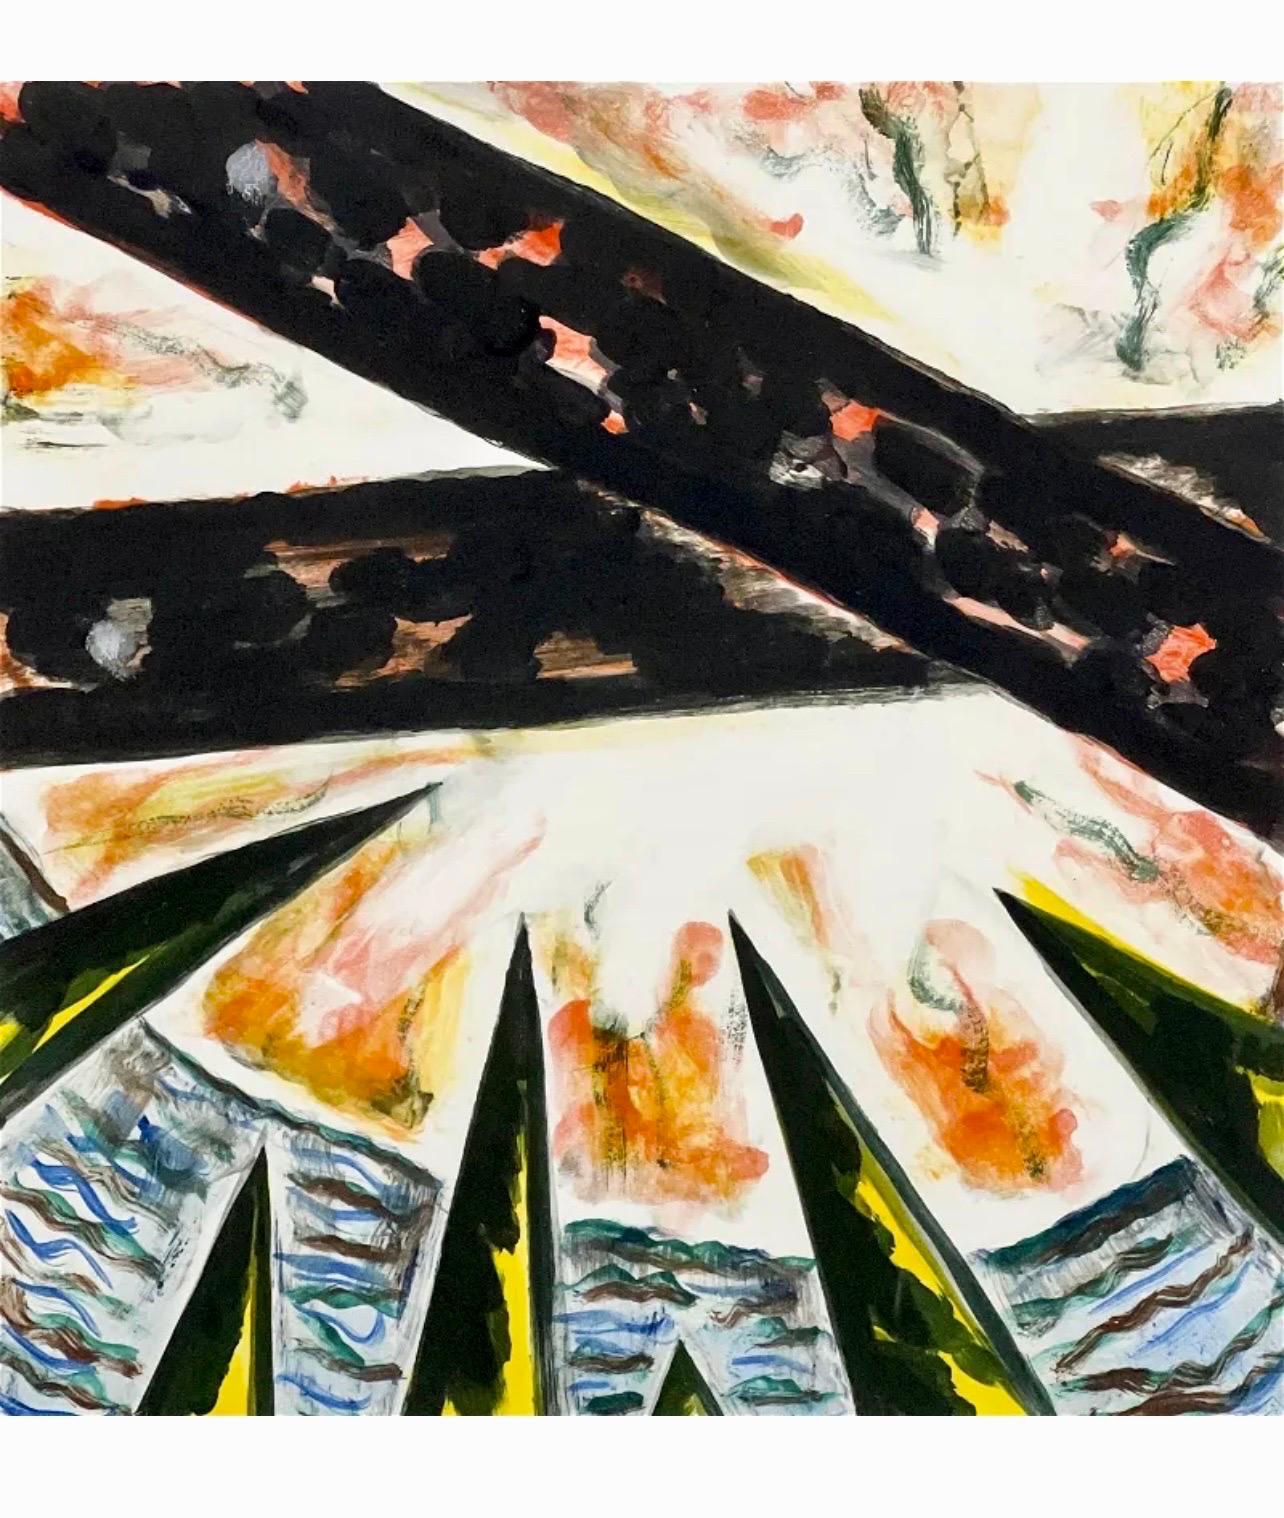 Gregory Amenoff (peintre abstrait américain contemporain, né en 1948),  
Monotype Monoprint (1990)
Signature manuscrite au crayon en bas à droite
plaque : 16 x 16 pouces
dimensions du cadre : 35 1/8 x 29 1/8 x 1 5/8 pouces, cadre en bois avec